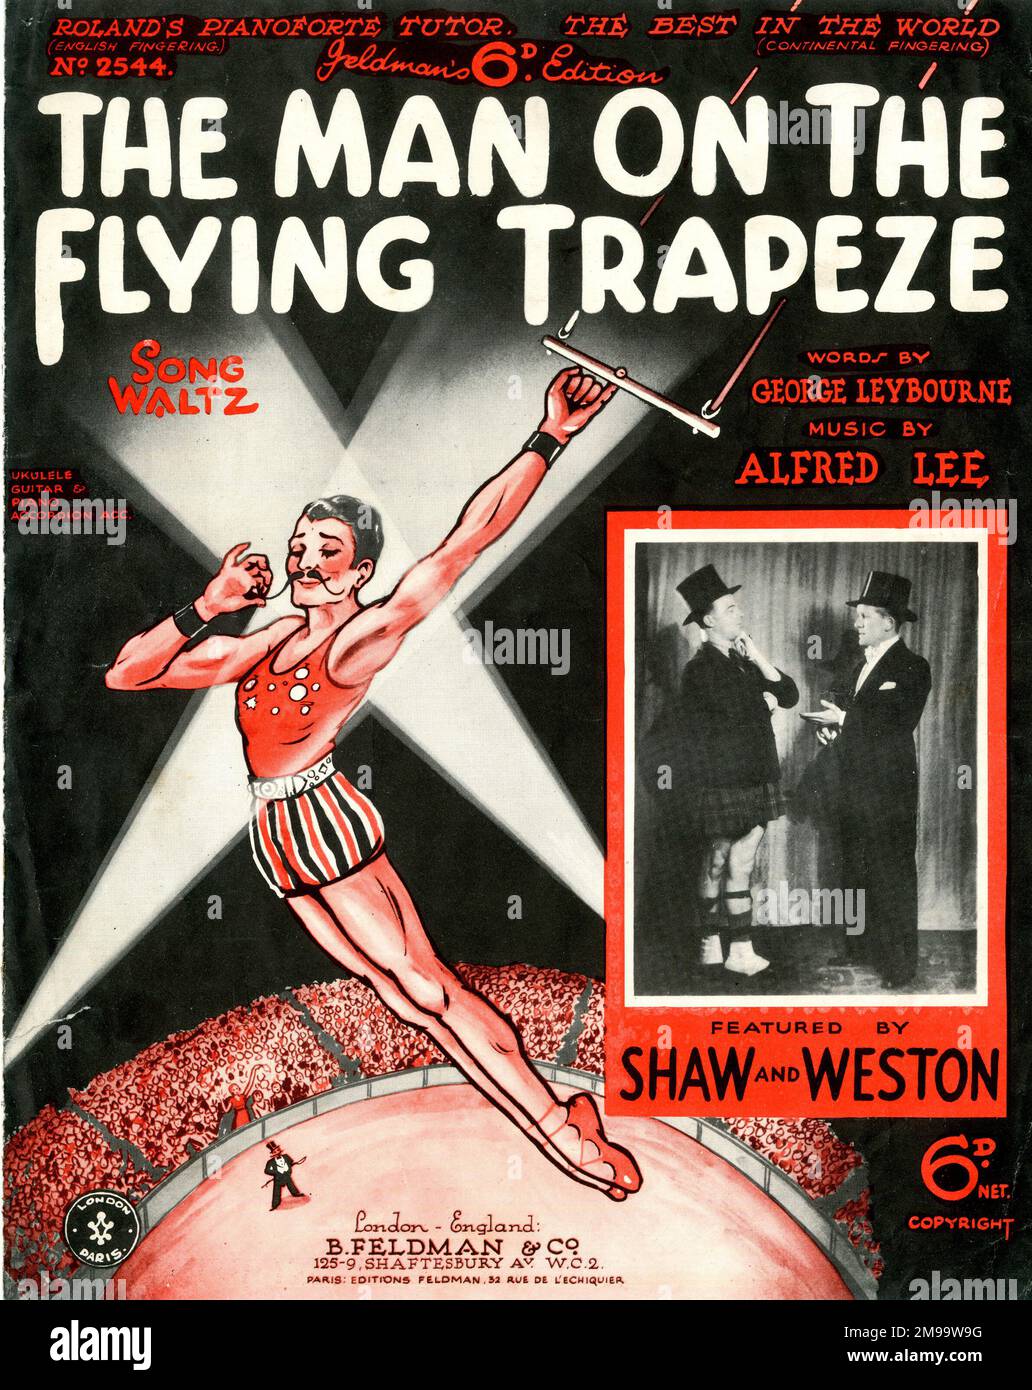 Copertina musicale, The Man on the Flying Trapeze, valzer di canzoni, parole di George Leybourne, musica di Alfred Lee, eseguita da Shaw e Weston. Foto Stock